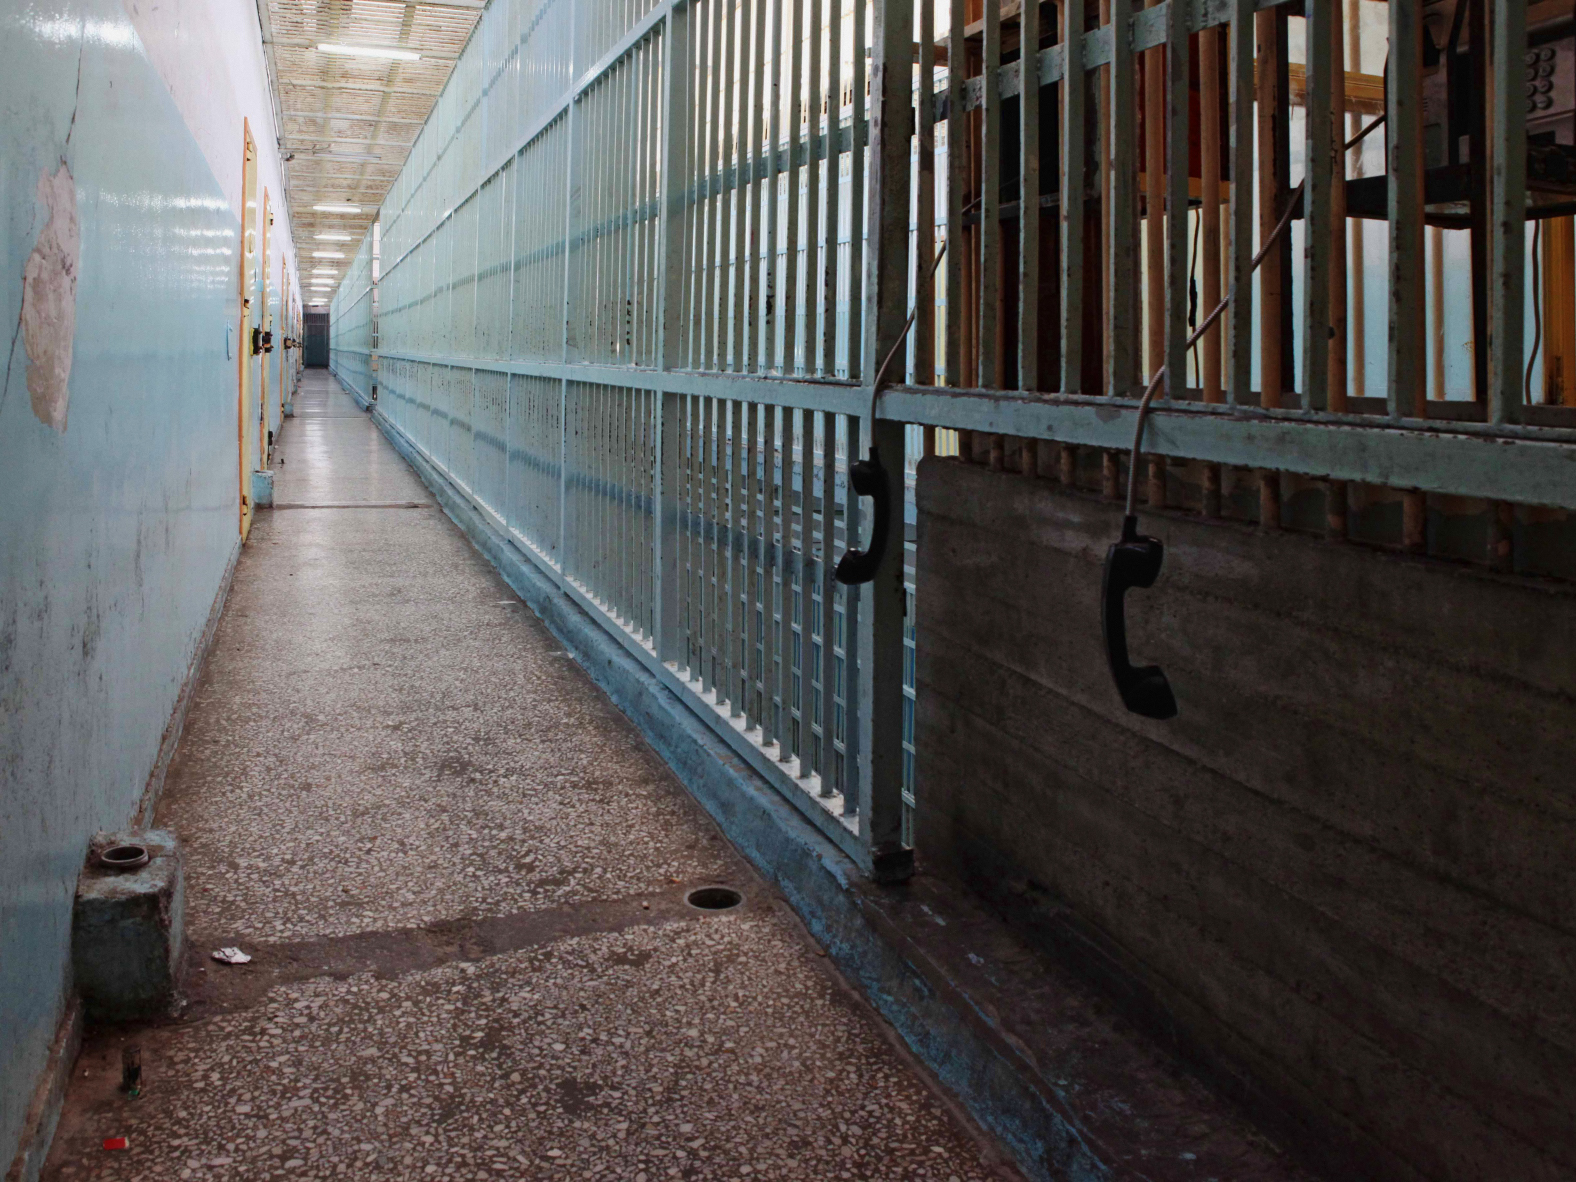 Φυλακές Πάτρας: Νεκρός κρατούμενος στο κελί του-Σοκ!